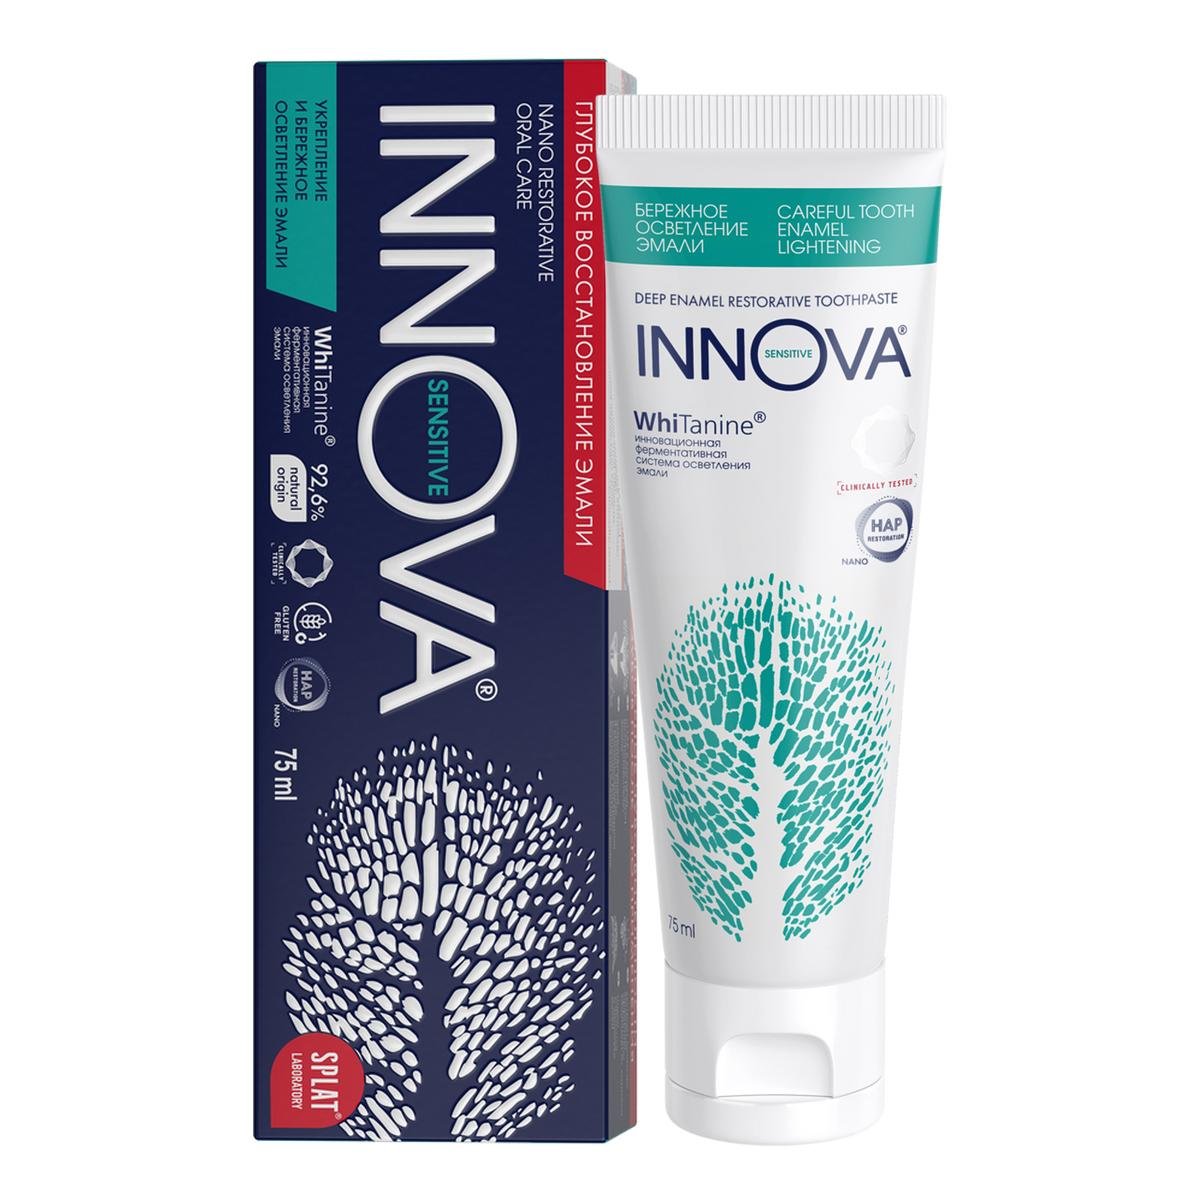 Зубная паста INNOVA® Бережное осветление эмали